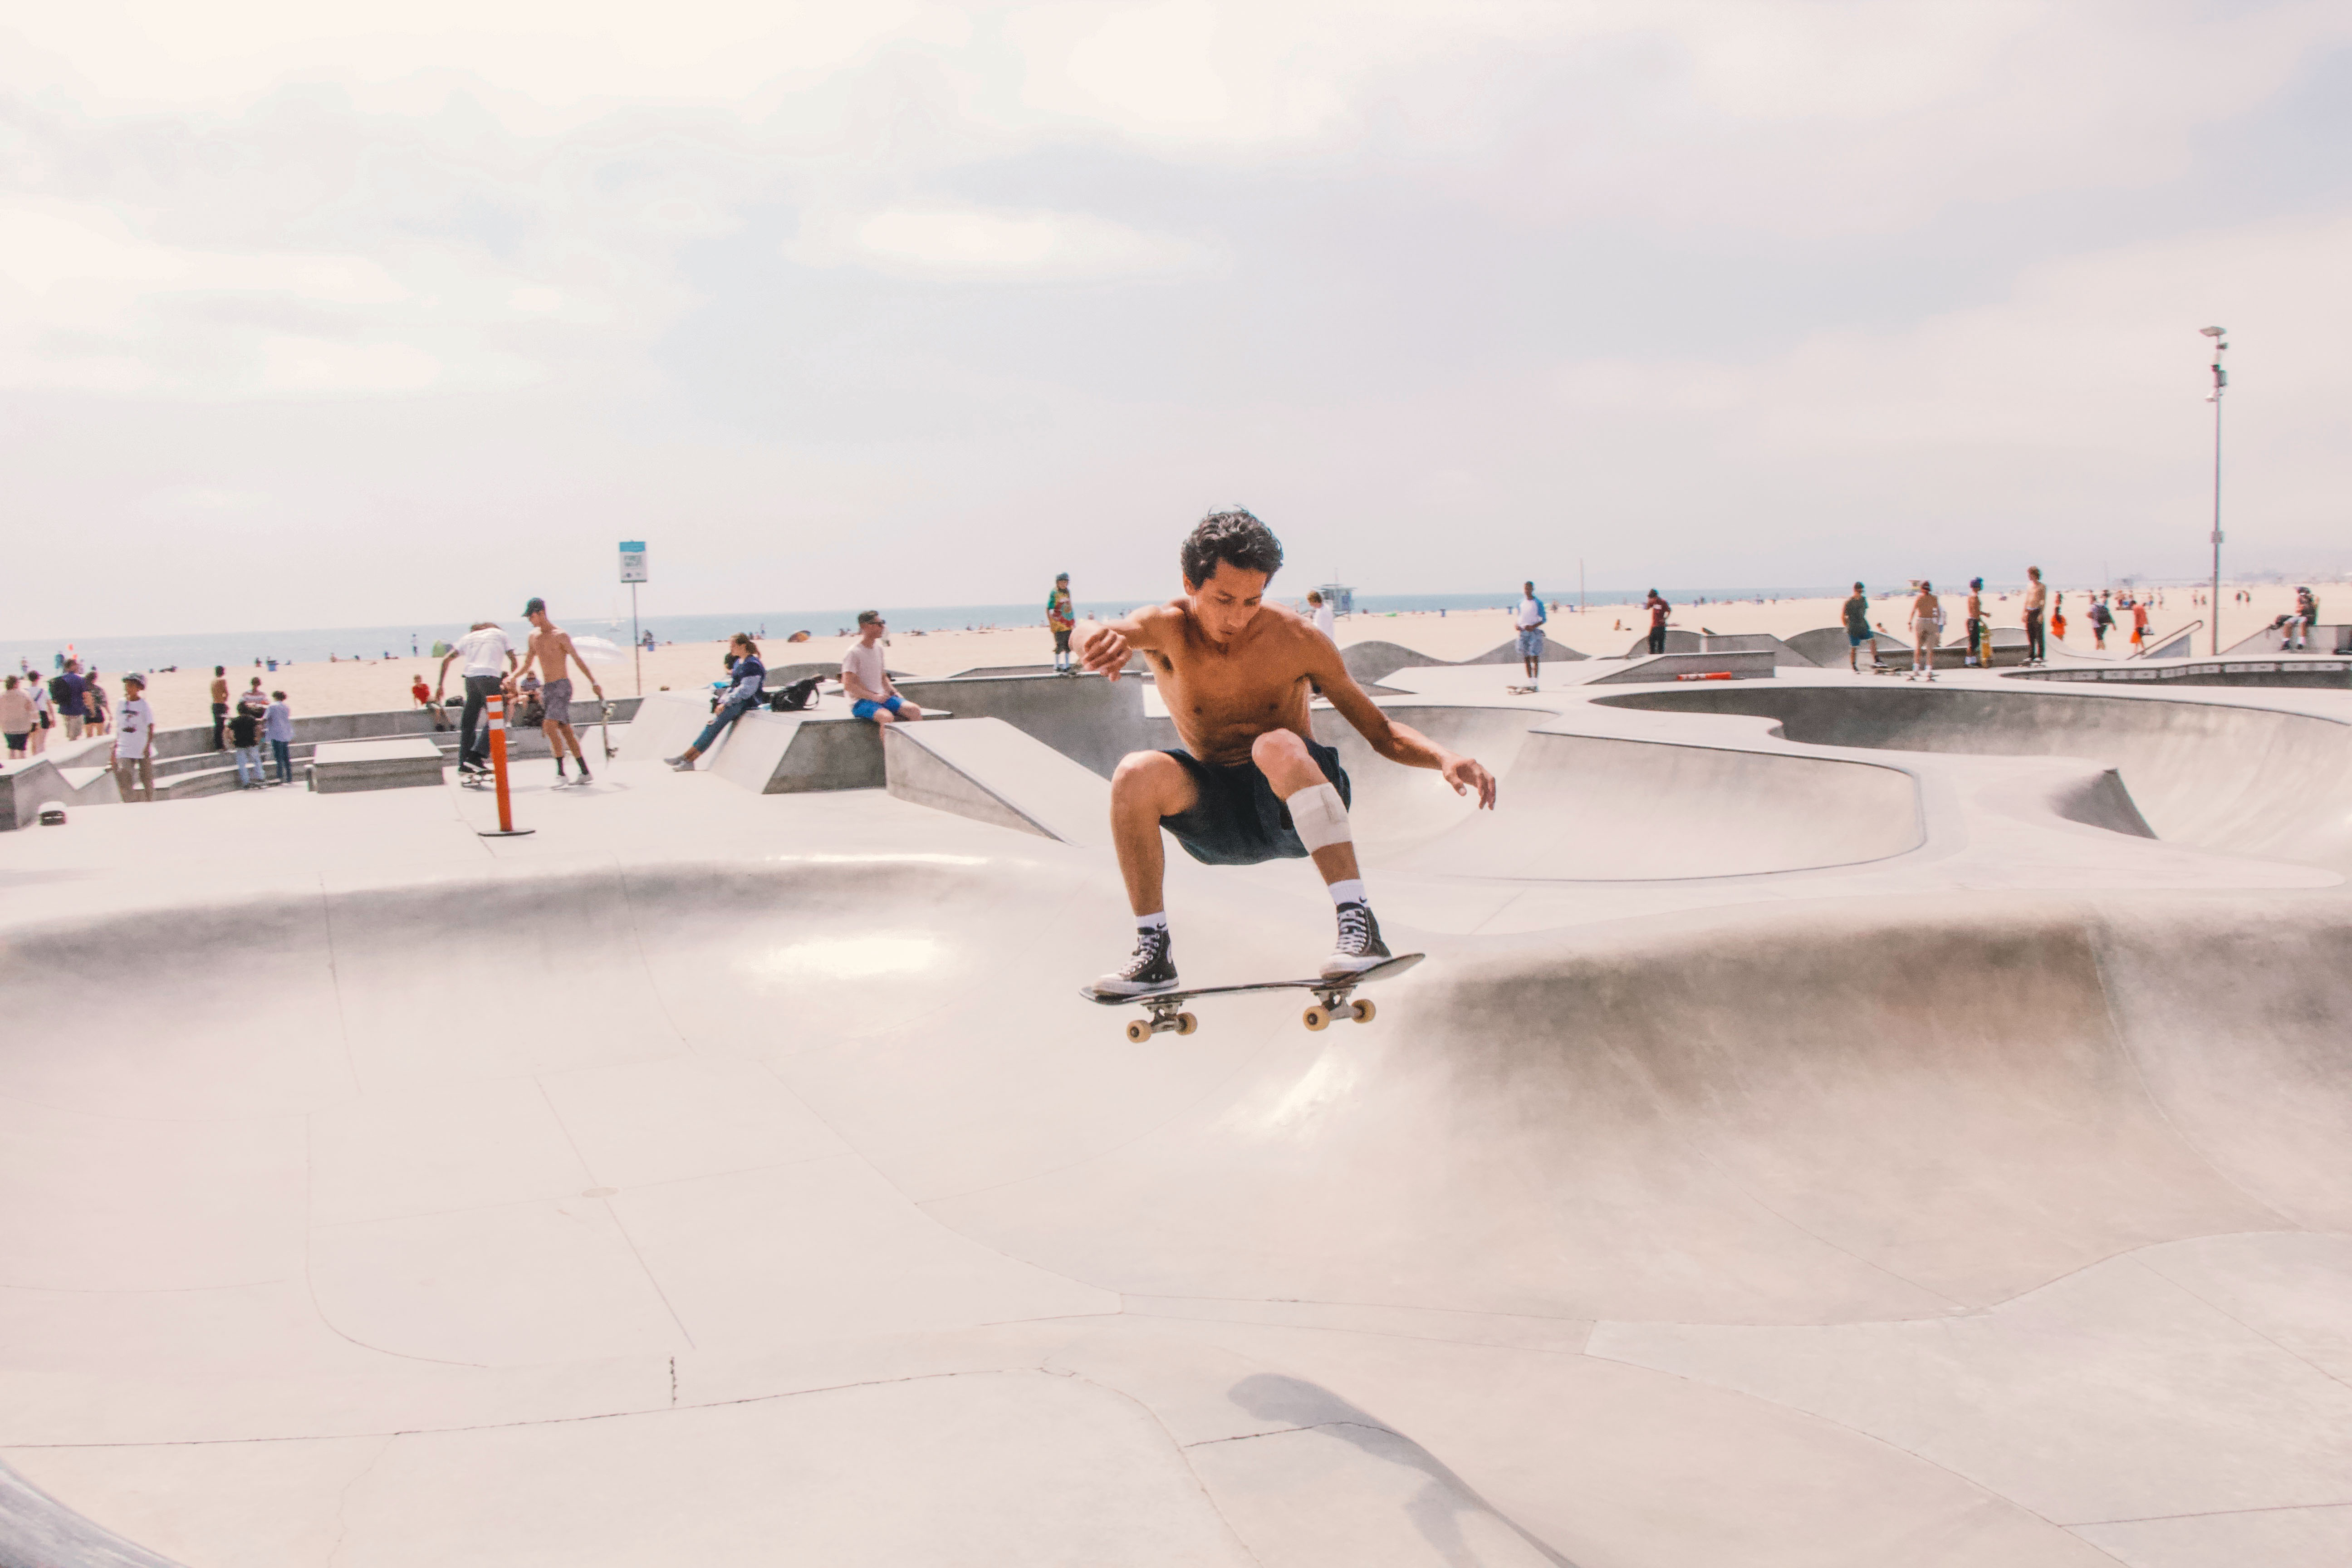 Venice beach skate park